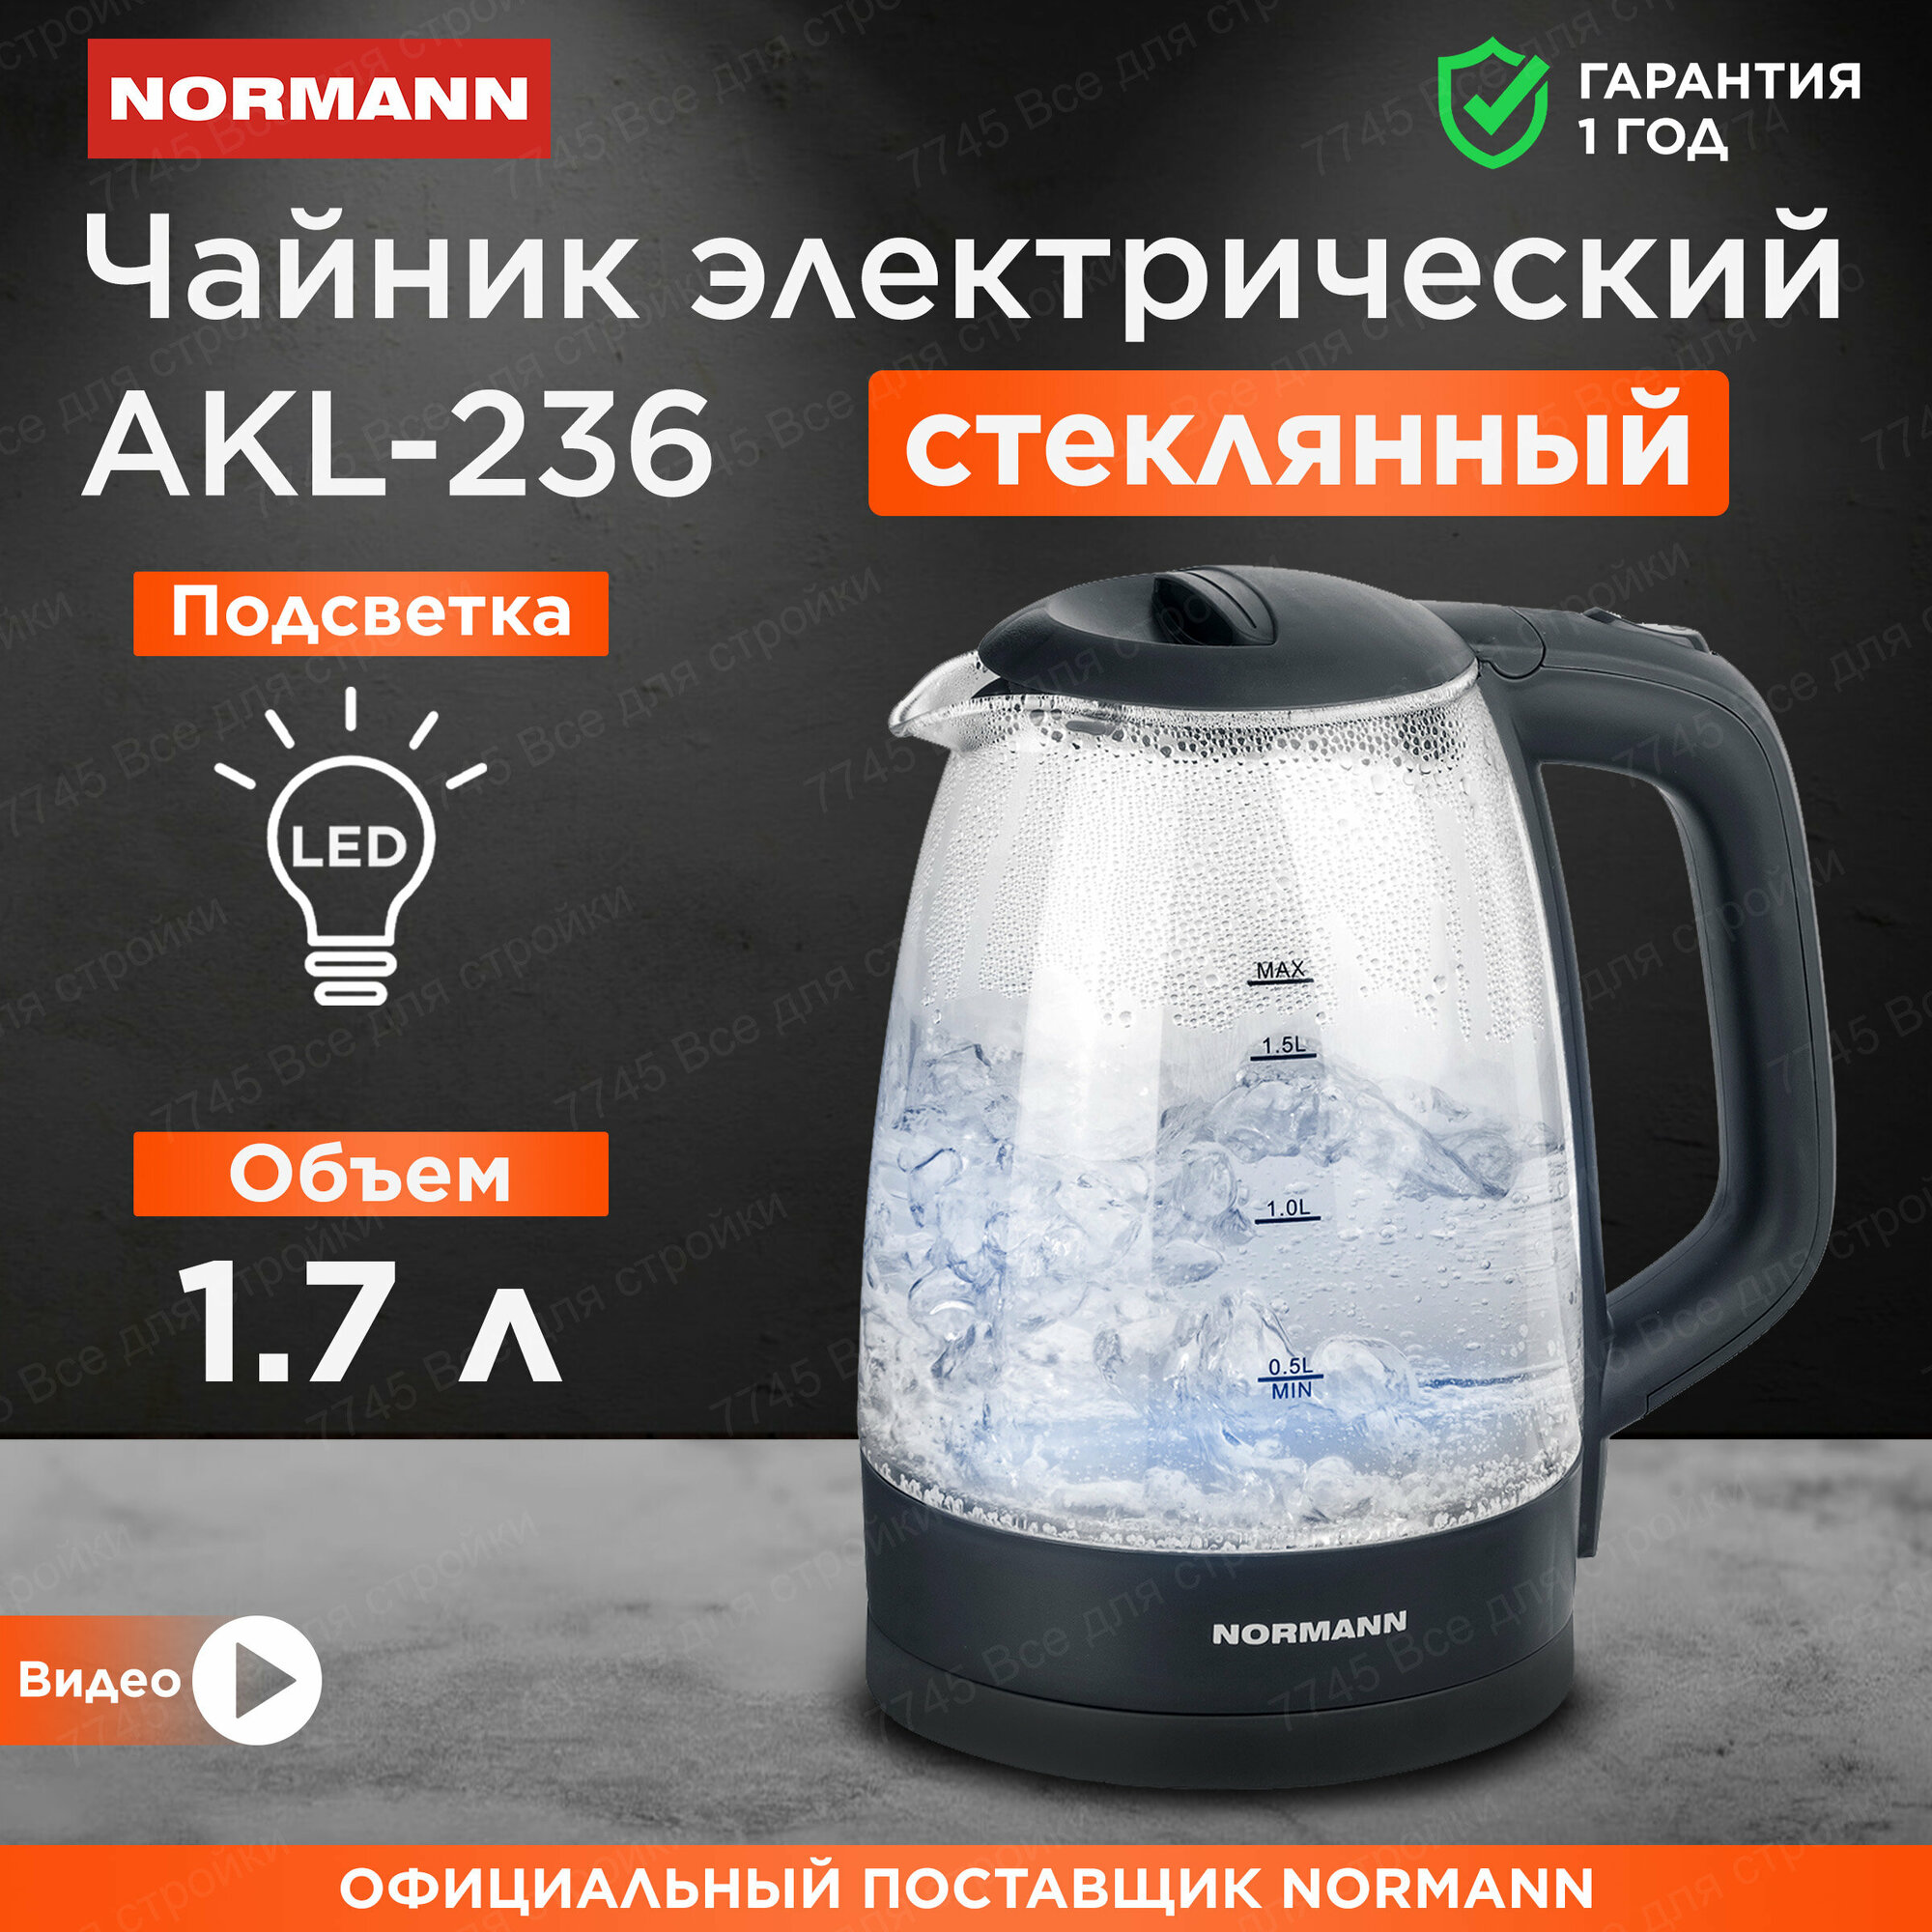 Чайник электрический стеклянный с подсветкой 1,7 л черный NORMANN AKL-236